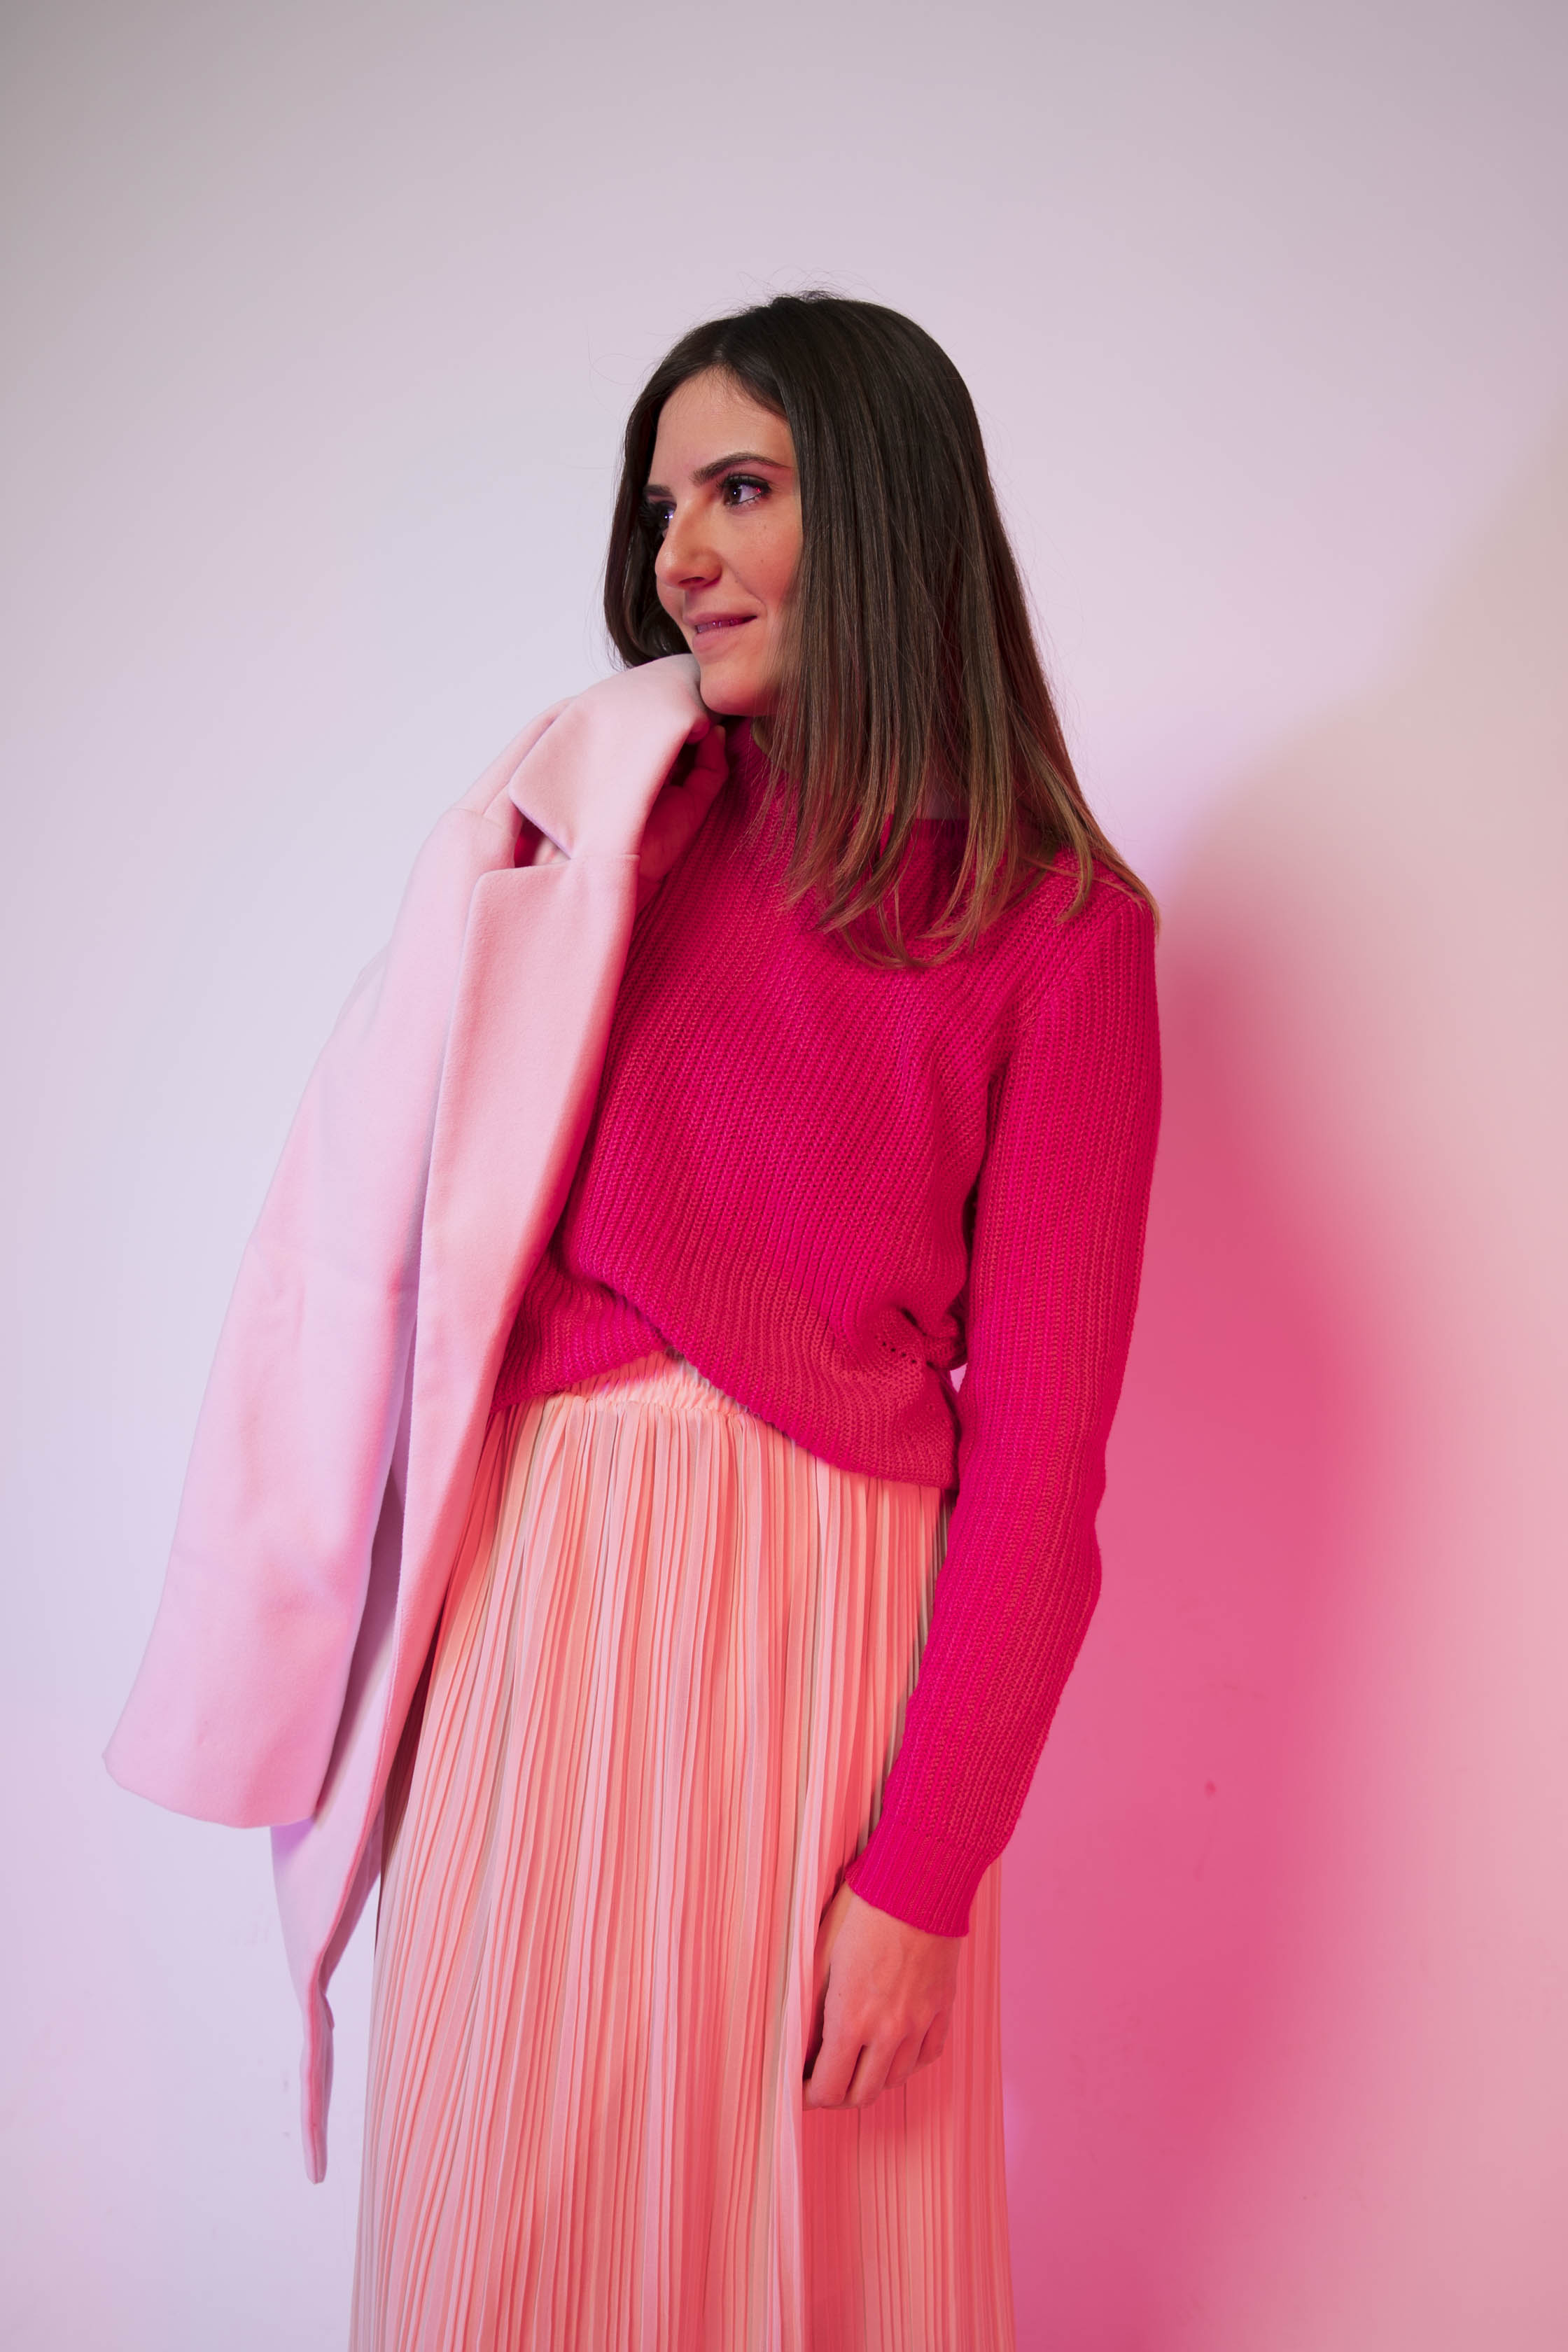 comment porter le manteau rose blog mode les caprices d iris